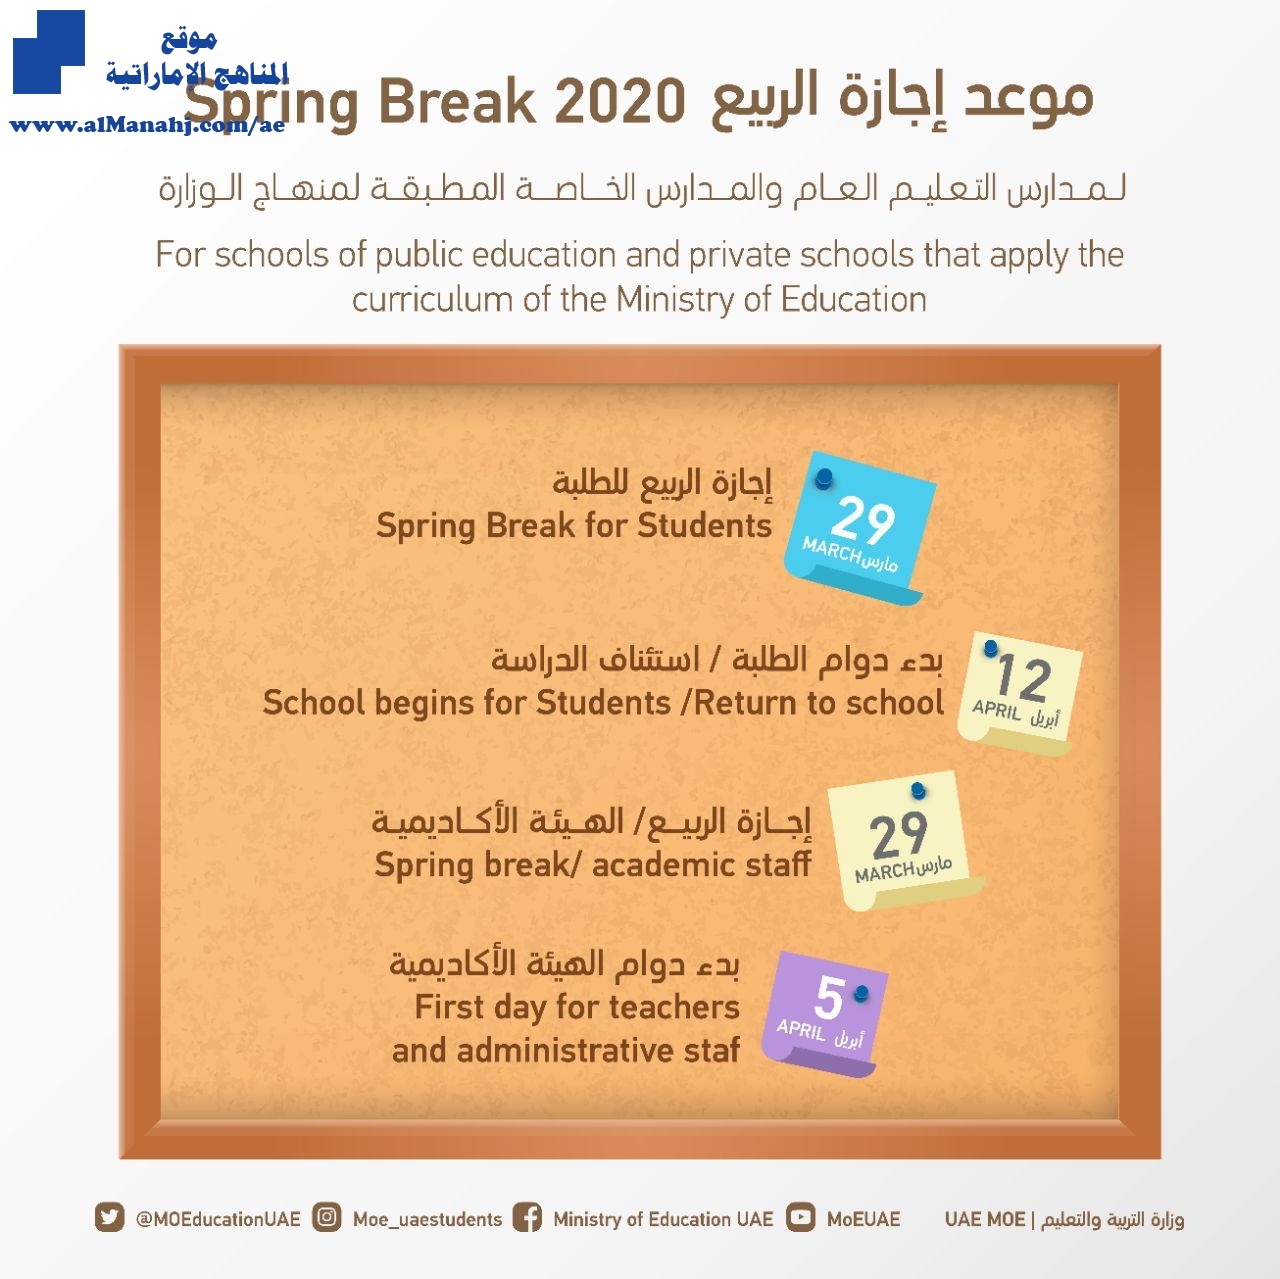 التربية تحدد موعد إجازة الربيع ٢٠٢٠ أخبار الدوام الفصل الثاني 2019 2020 المناهج الإماراتية